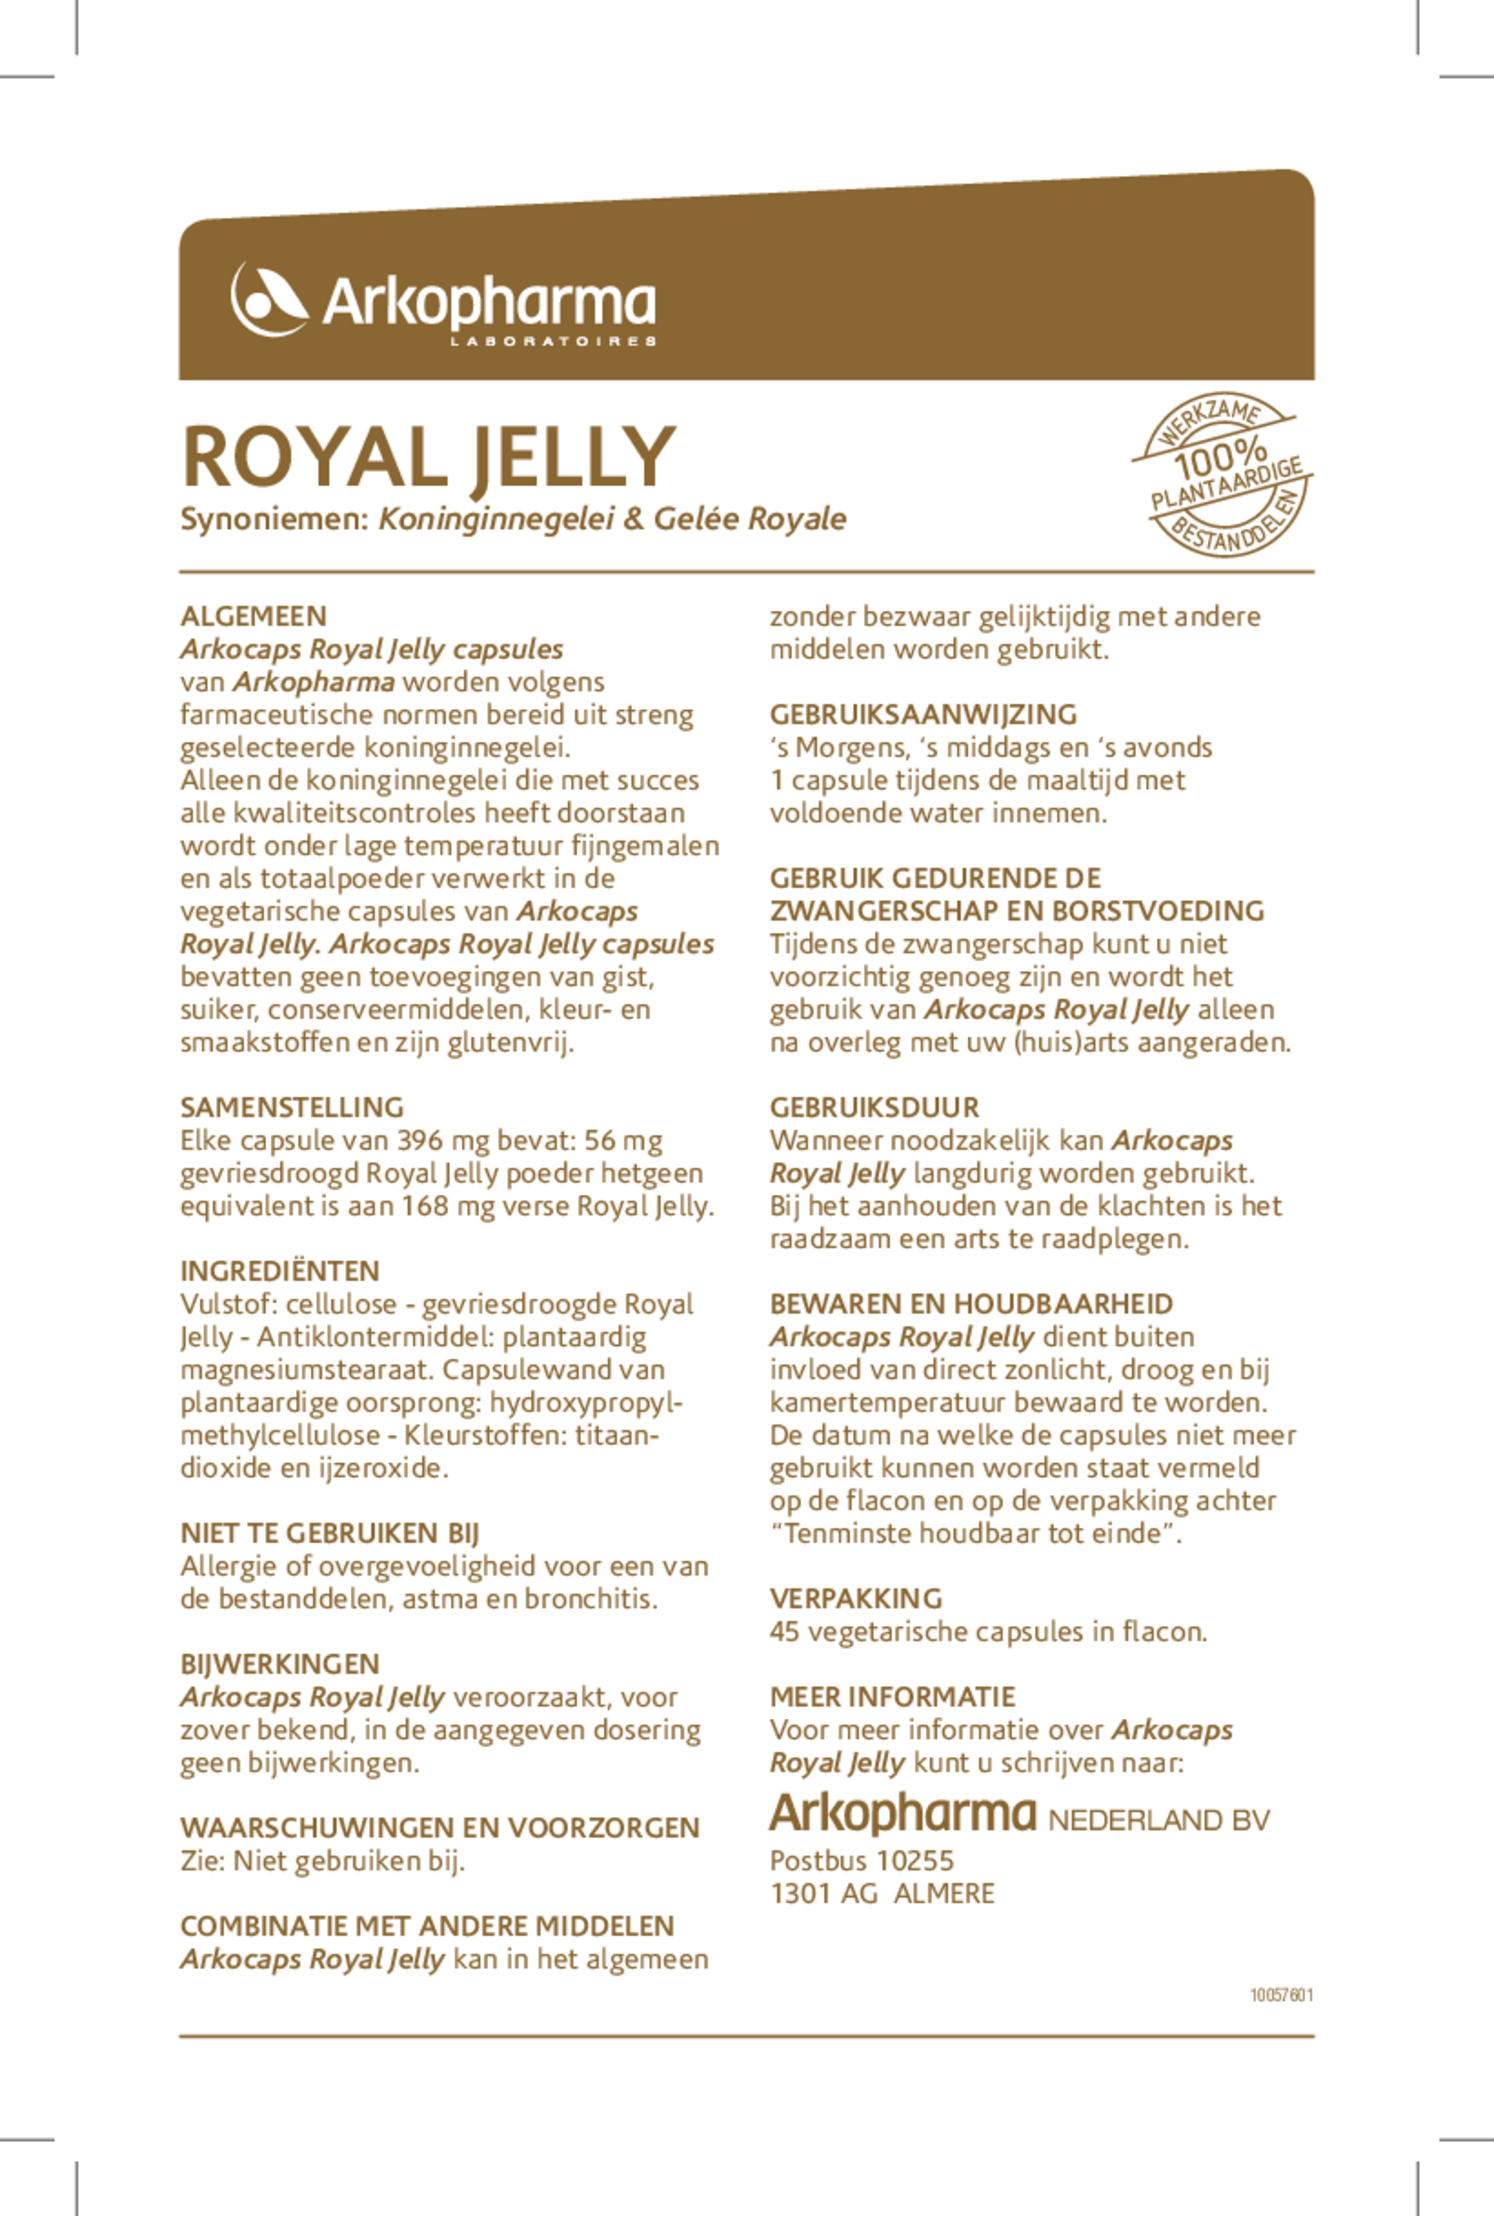 Royal Jelly Capsules afbeelding van document #1, gebruiksaanwijzing